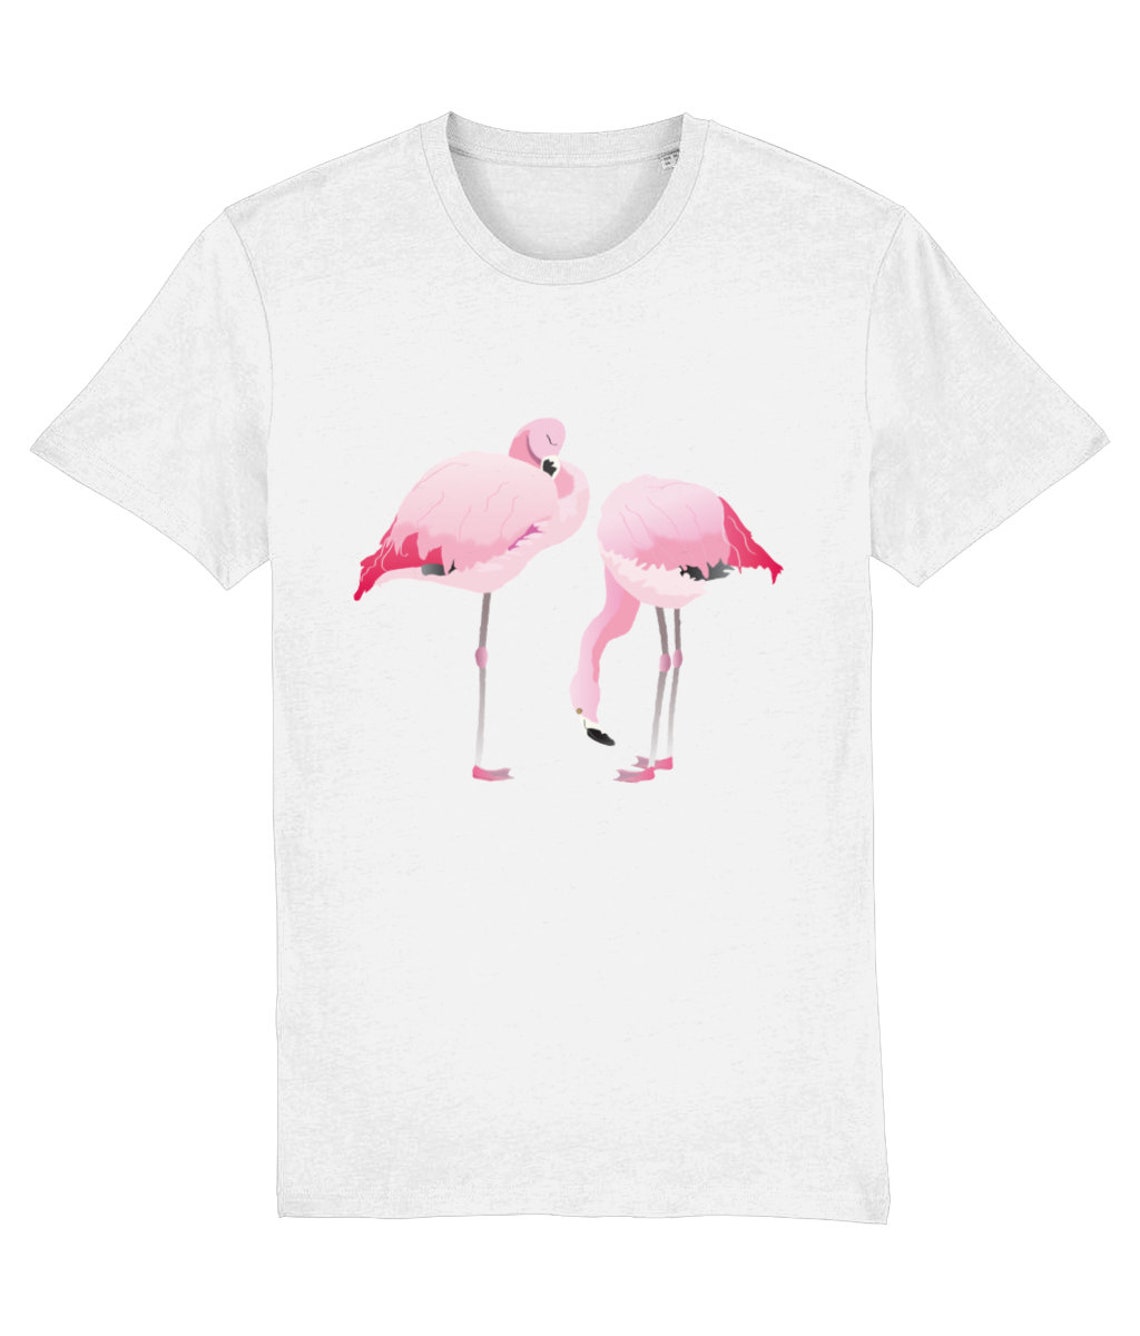 Flamingo T Shirt Adult Clothing Tees | Etsy